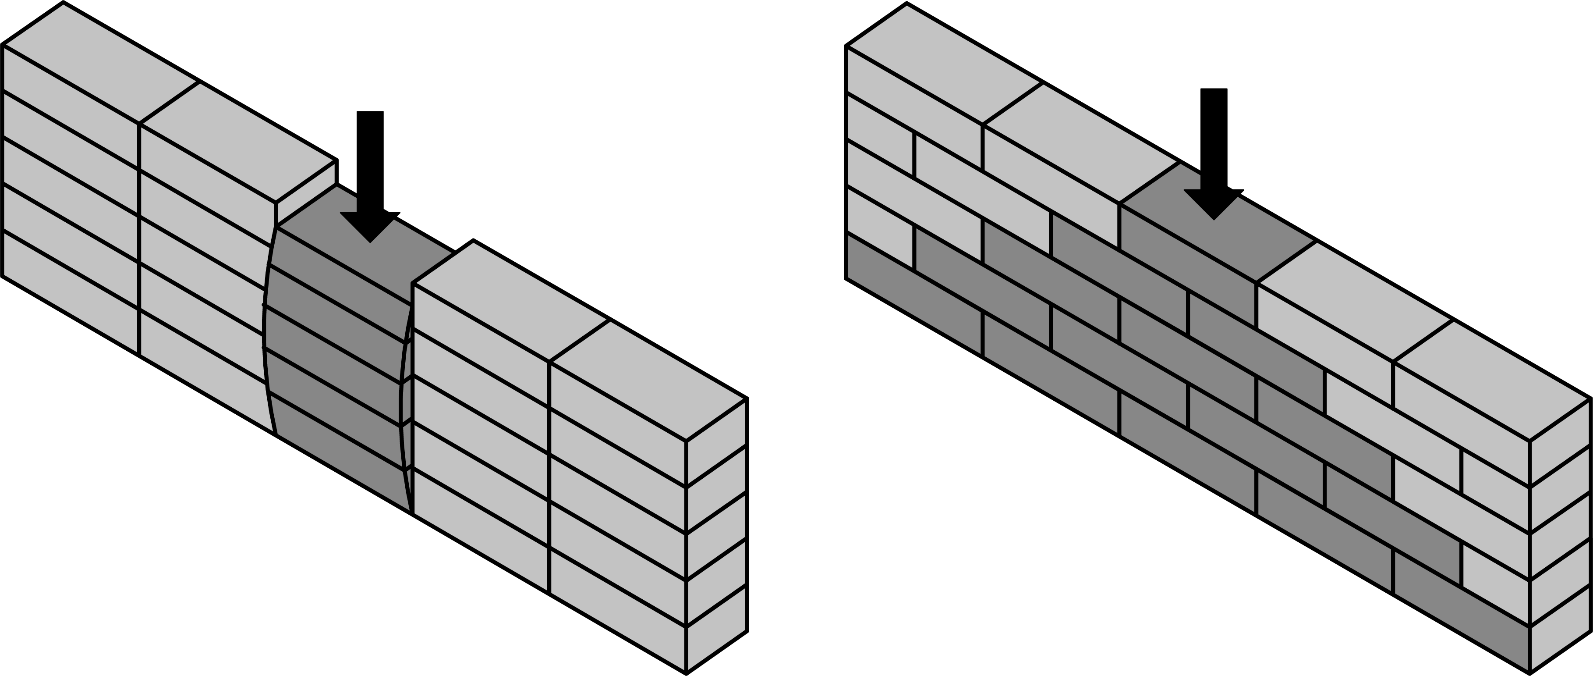 Mauerwerksverband – Wirkungsweise zur vertikalen Lastabtragung